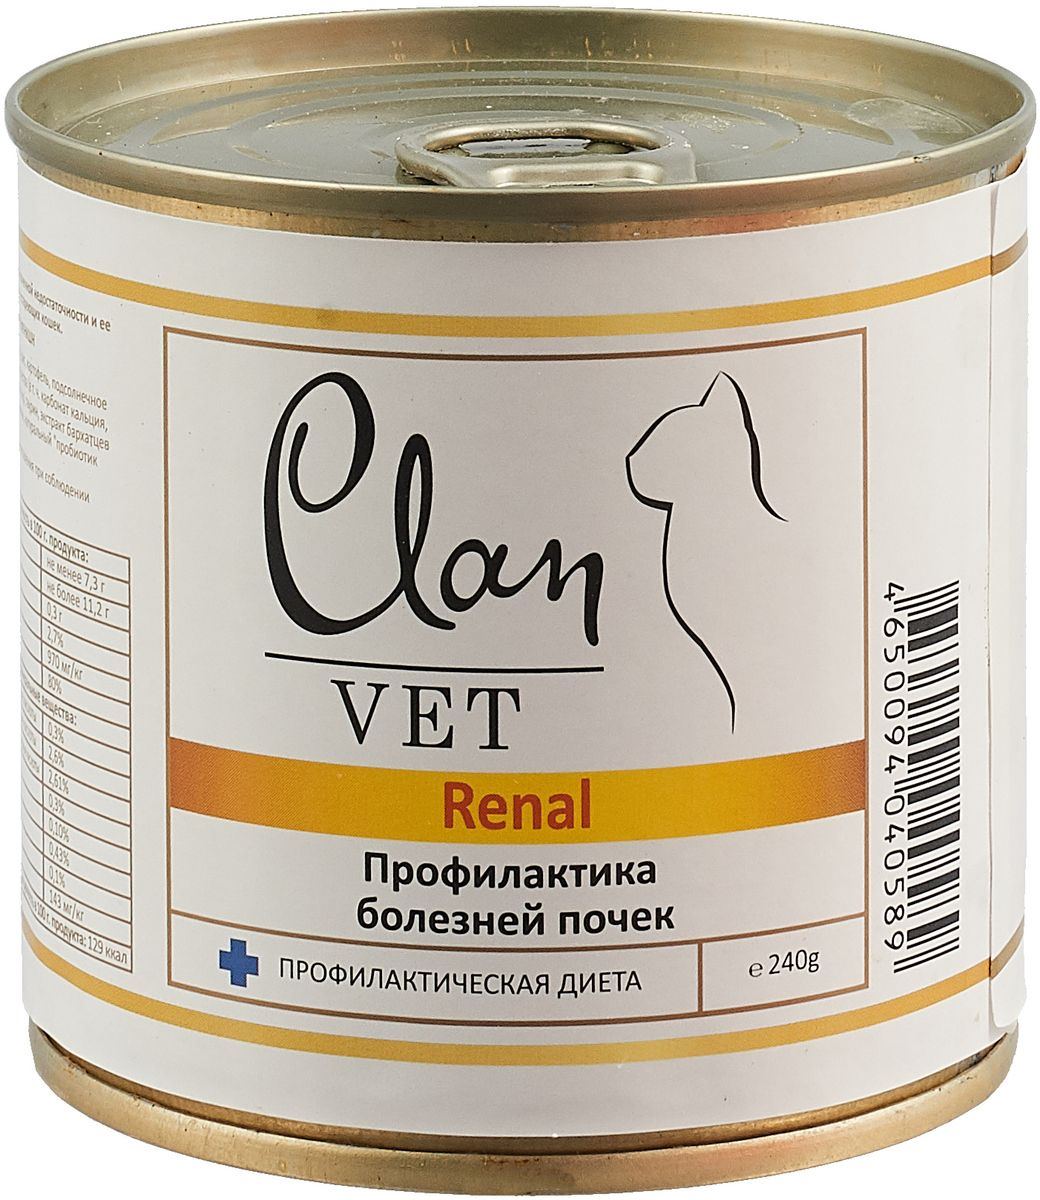 Clan Vet Renal влажный корм для взрослых кошек всех пород, диетический, профилактика болезней почек 240 гр